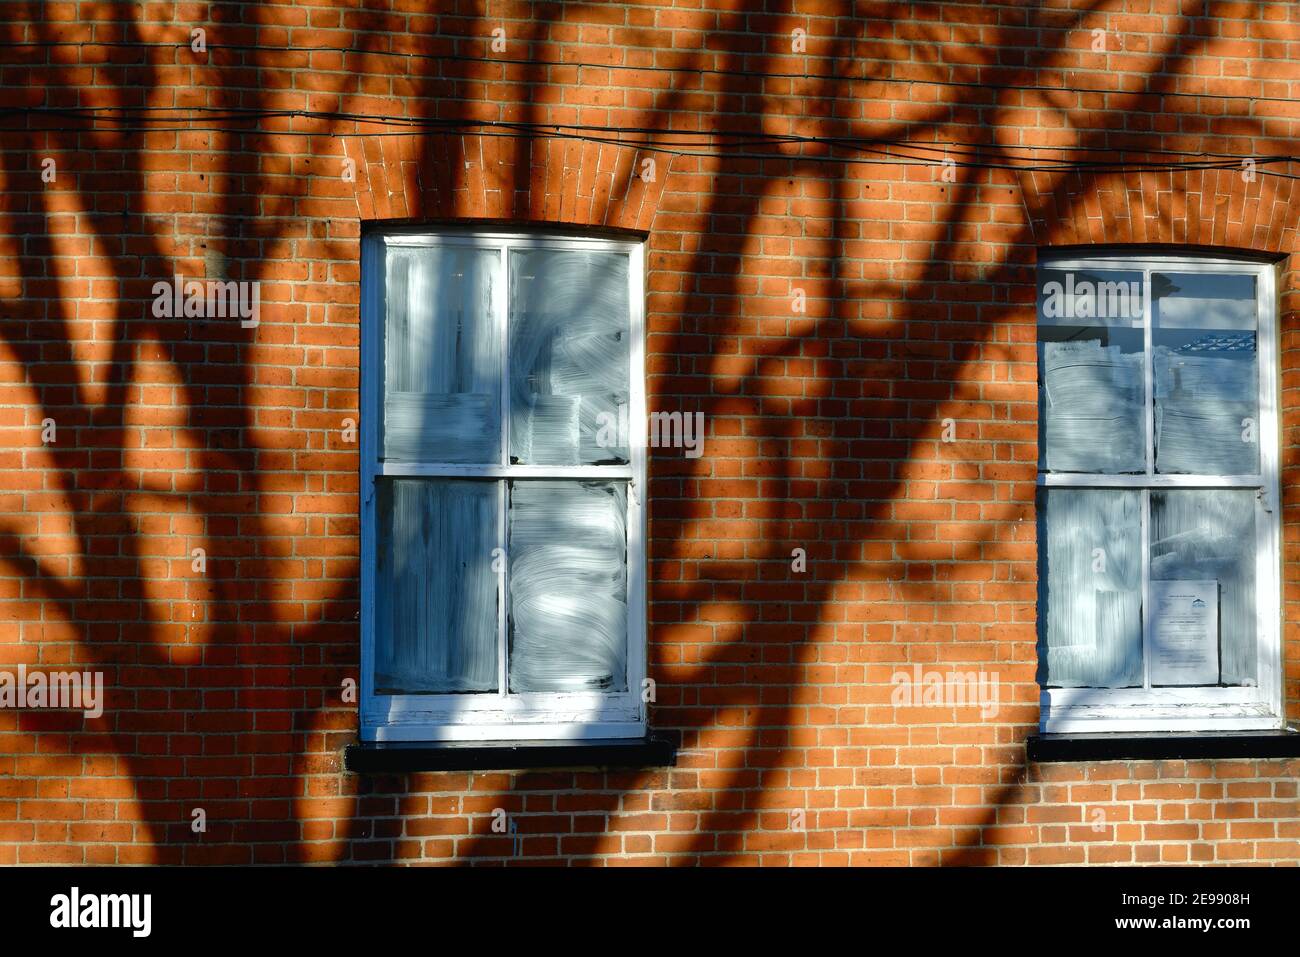 Los patrones abstractos y las formas causadas por las sombras fuertes de un árbol echado en una pared de ladrillo rojo con dos ventanas en blanco Foto de stock